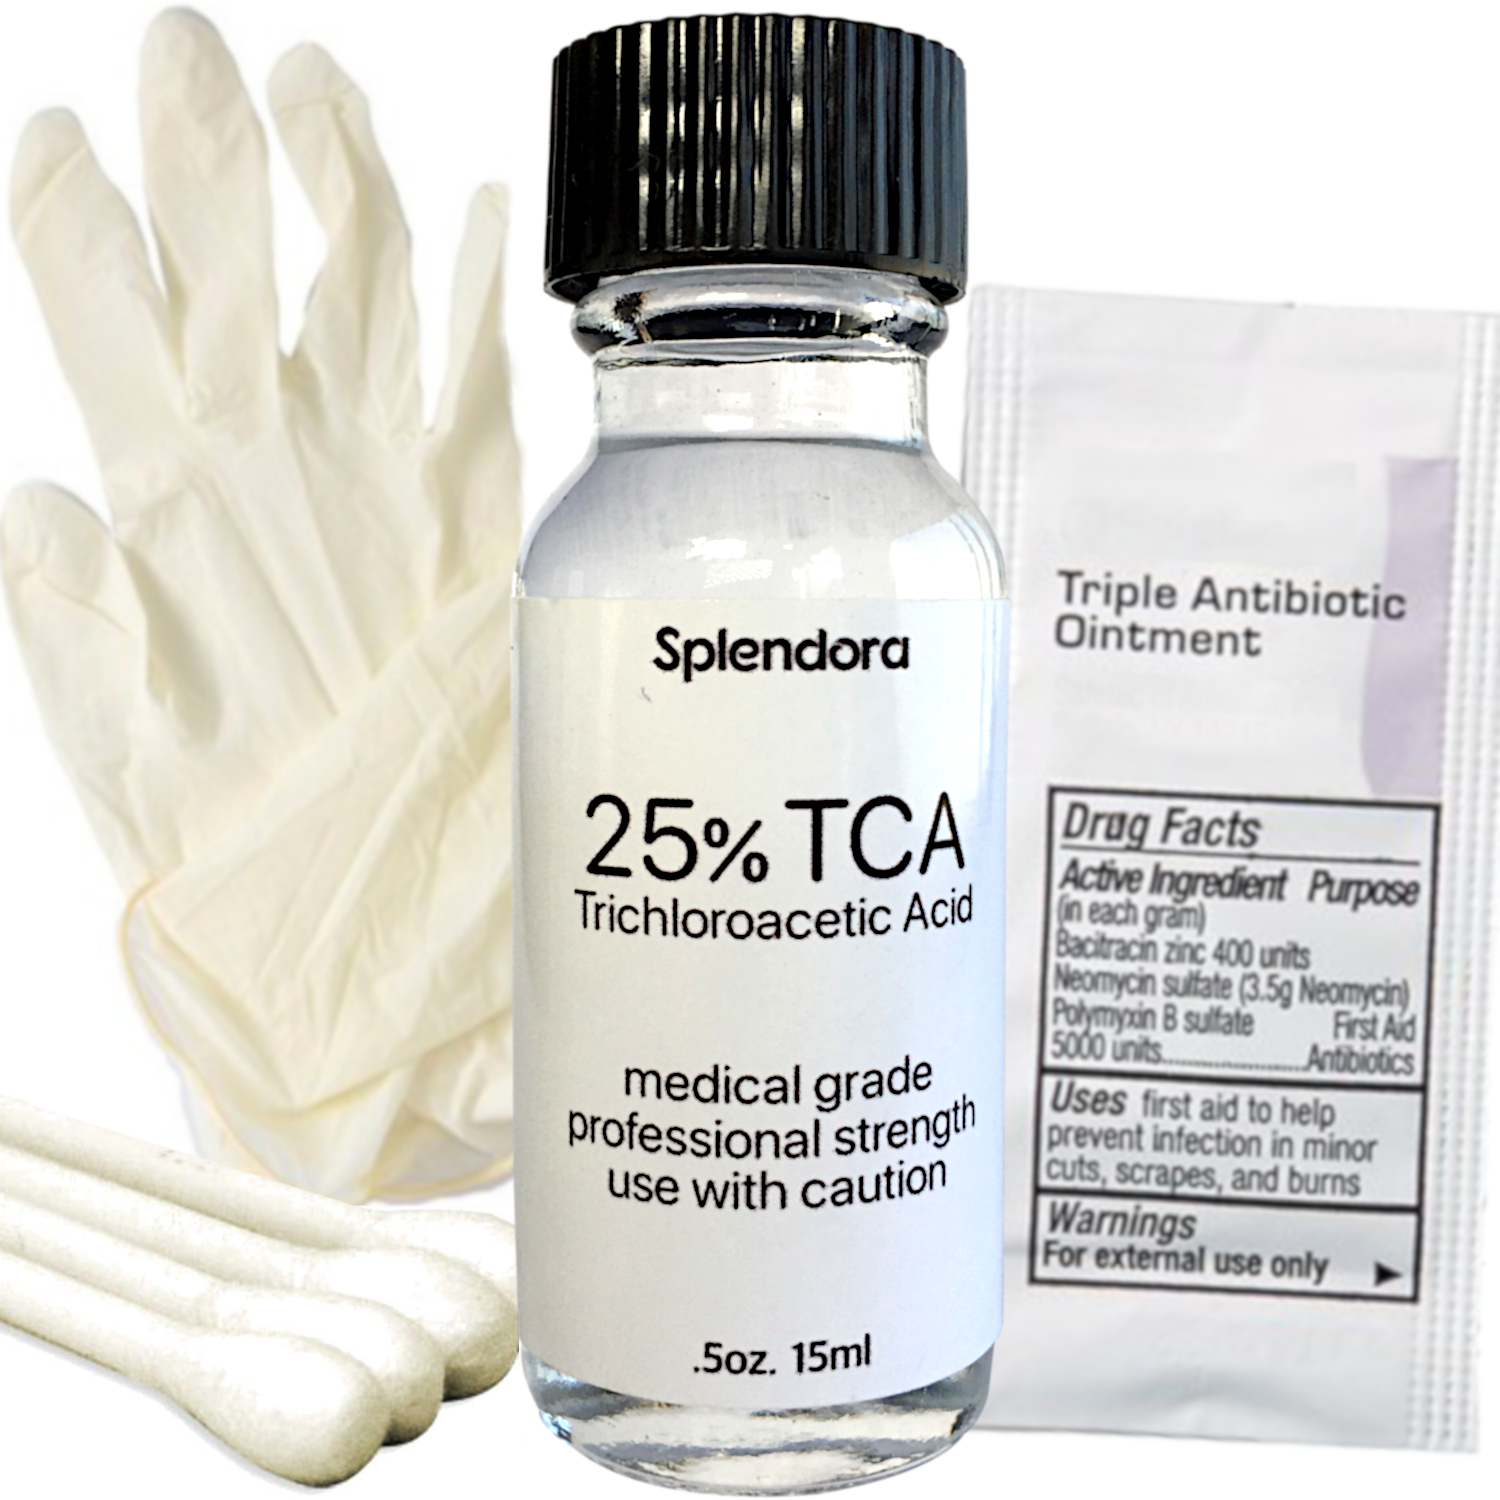 25% TCA Acid Skin Peel Kit (.5 Ounce / 15ml) - Professional Grade Acid